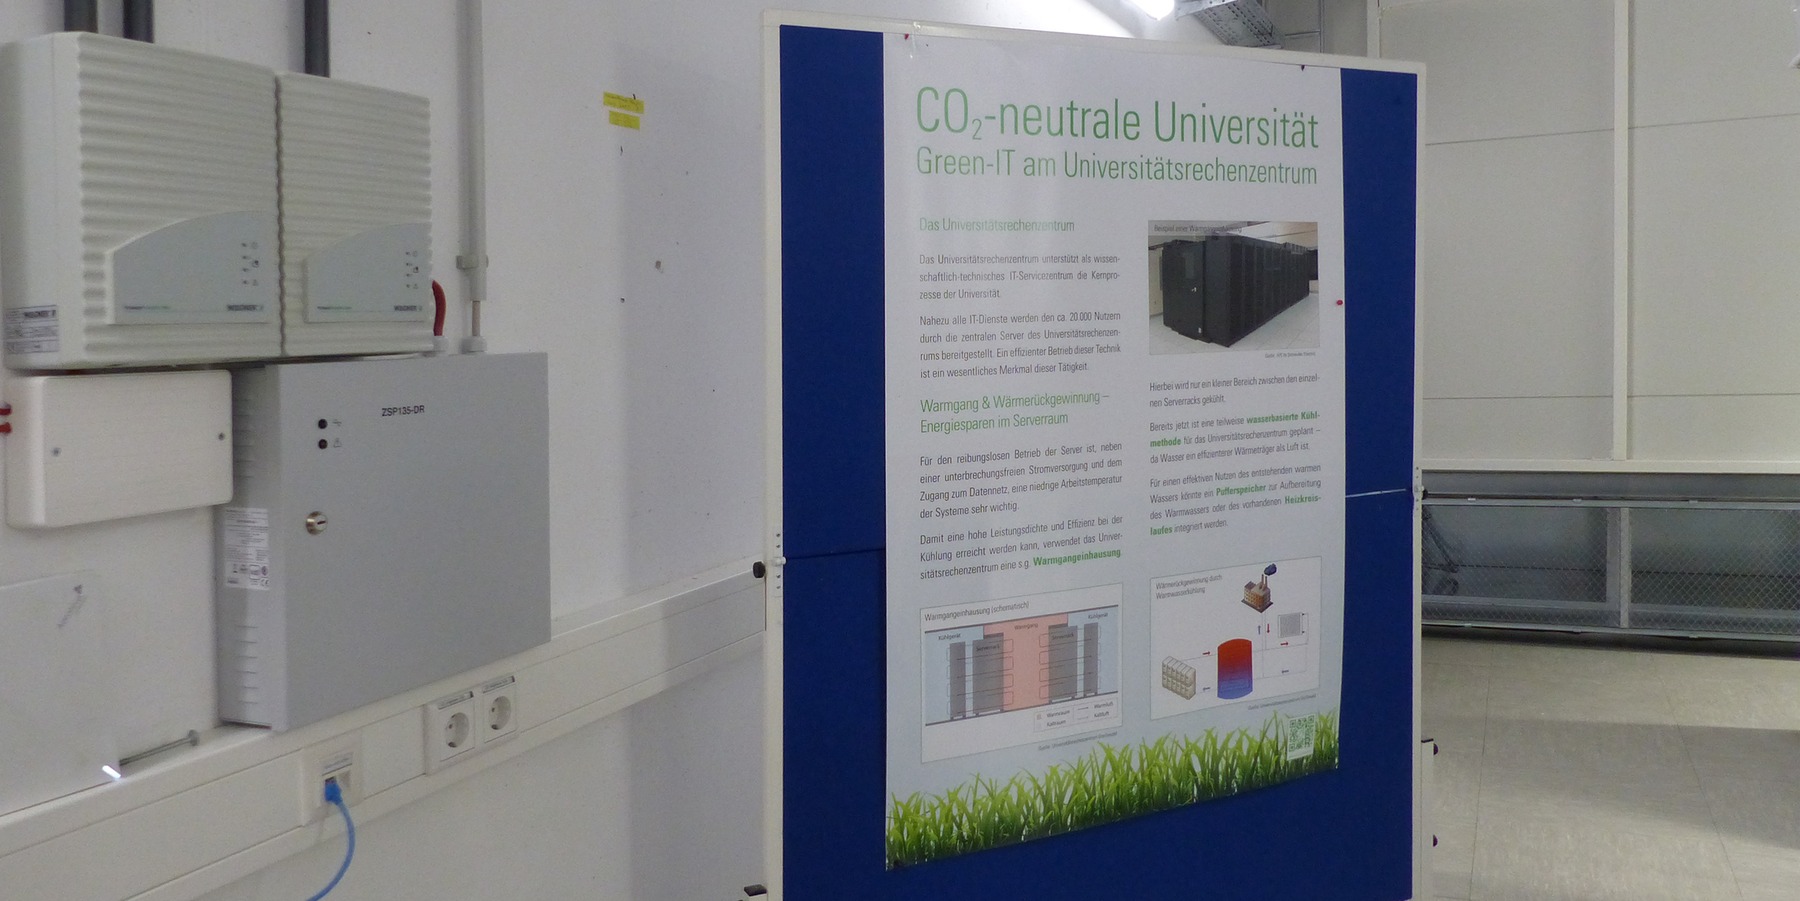 Green-IT am neuen Universitätsrechenzentrum - mit dem Neubau des Rechenzentrums wird ein wichtiger Beitrag für eine CO2-neutrale Universität geleistet © 2020 SBL Greifswald